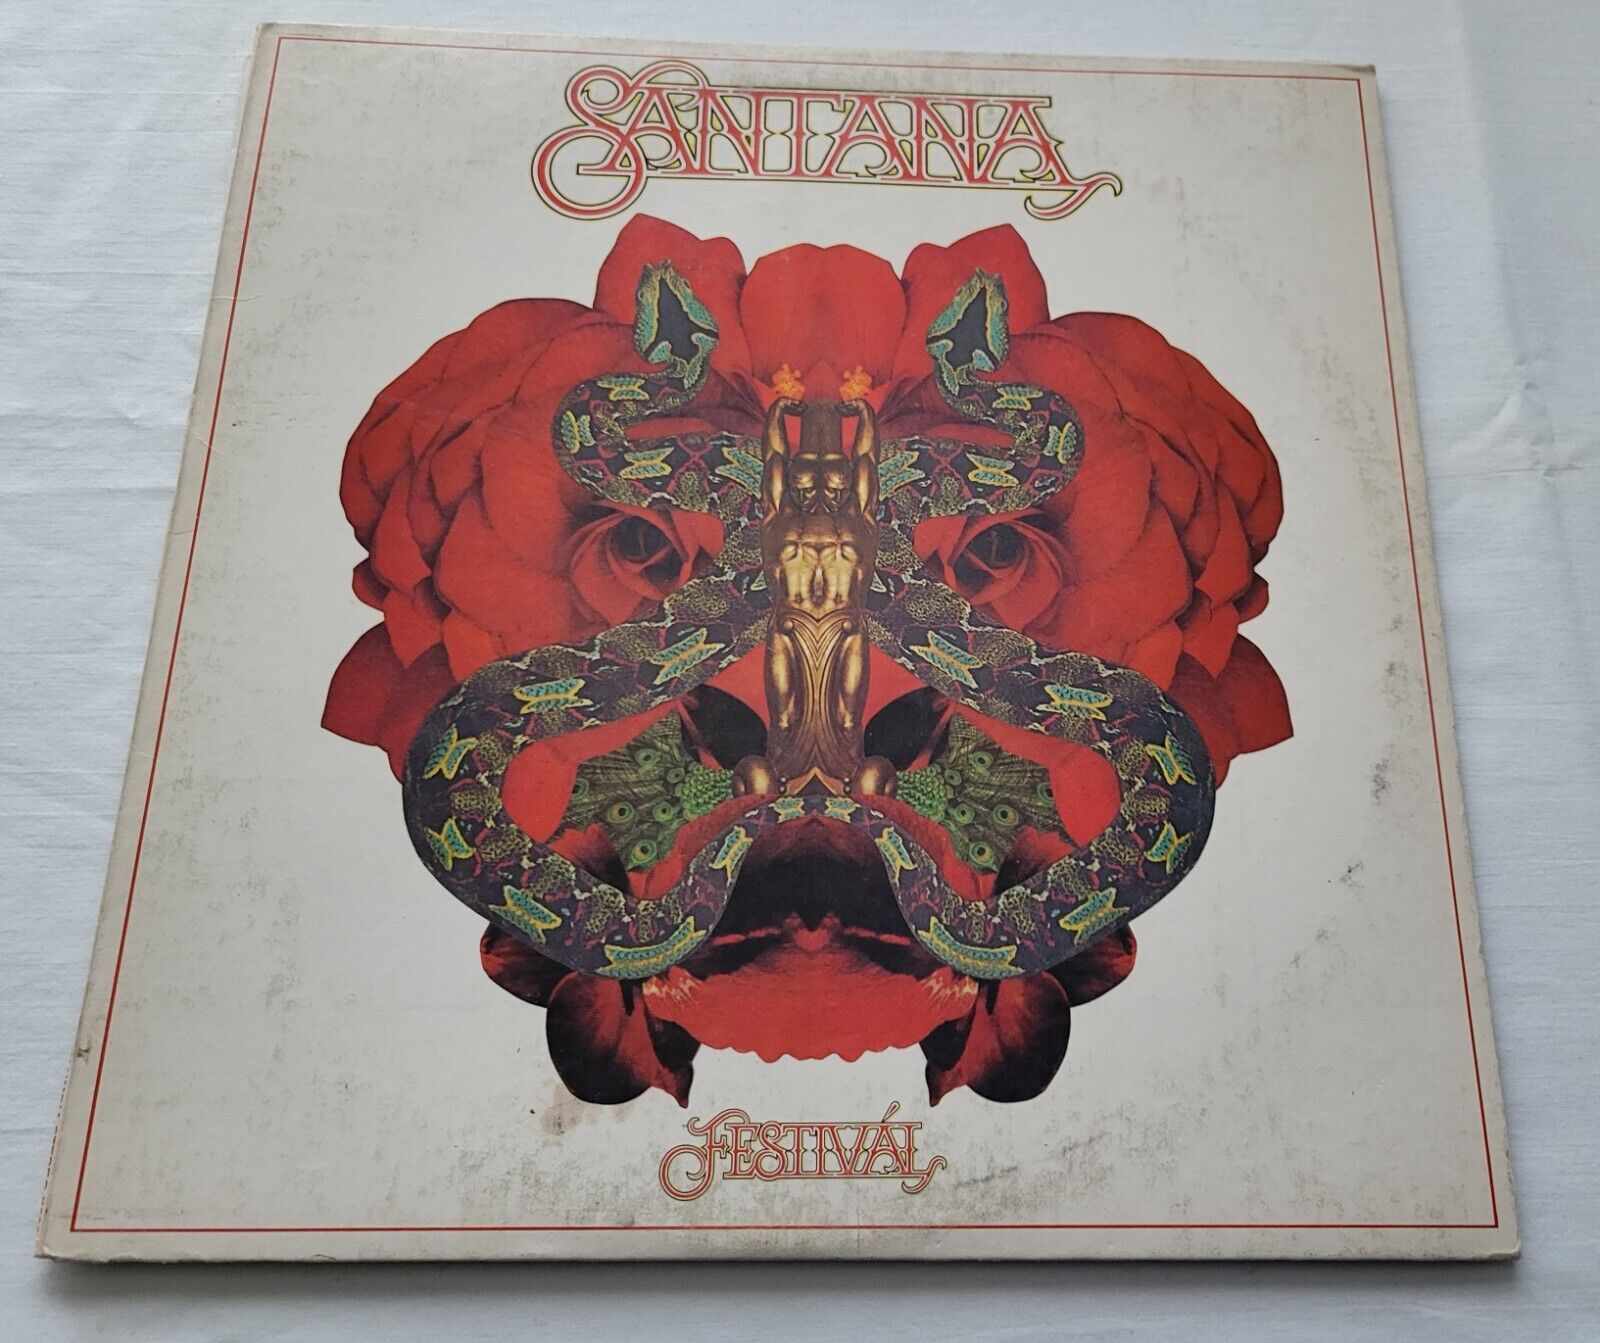 Santana – Festivál LP Vinyl 1977 Stereo 34423